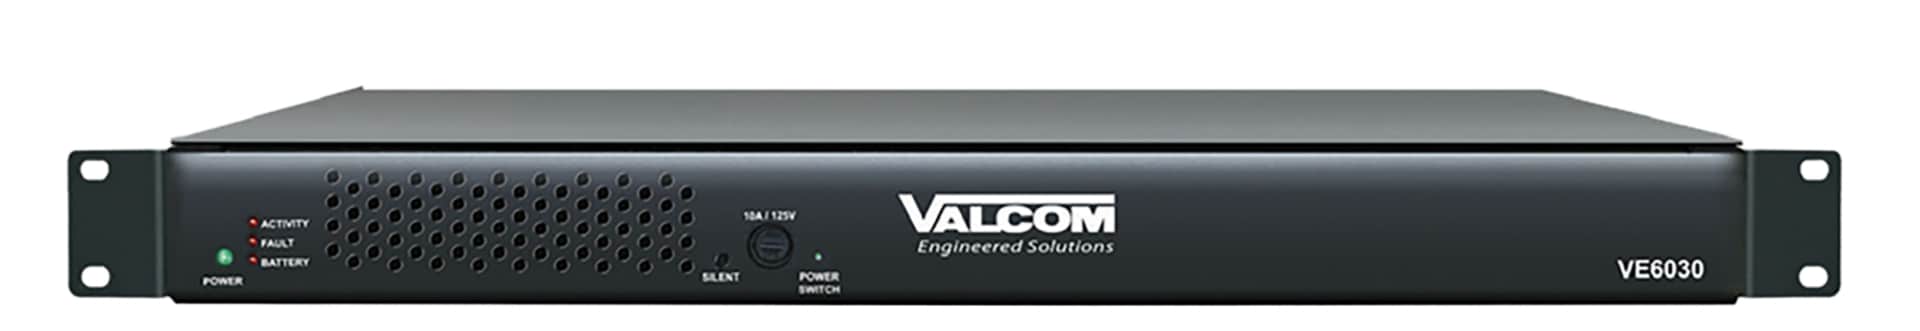 Valcom VE6030-1 Communication/Notification Server